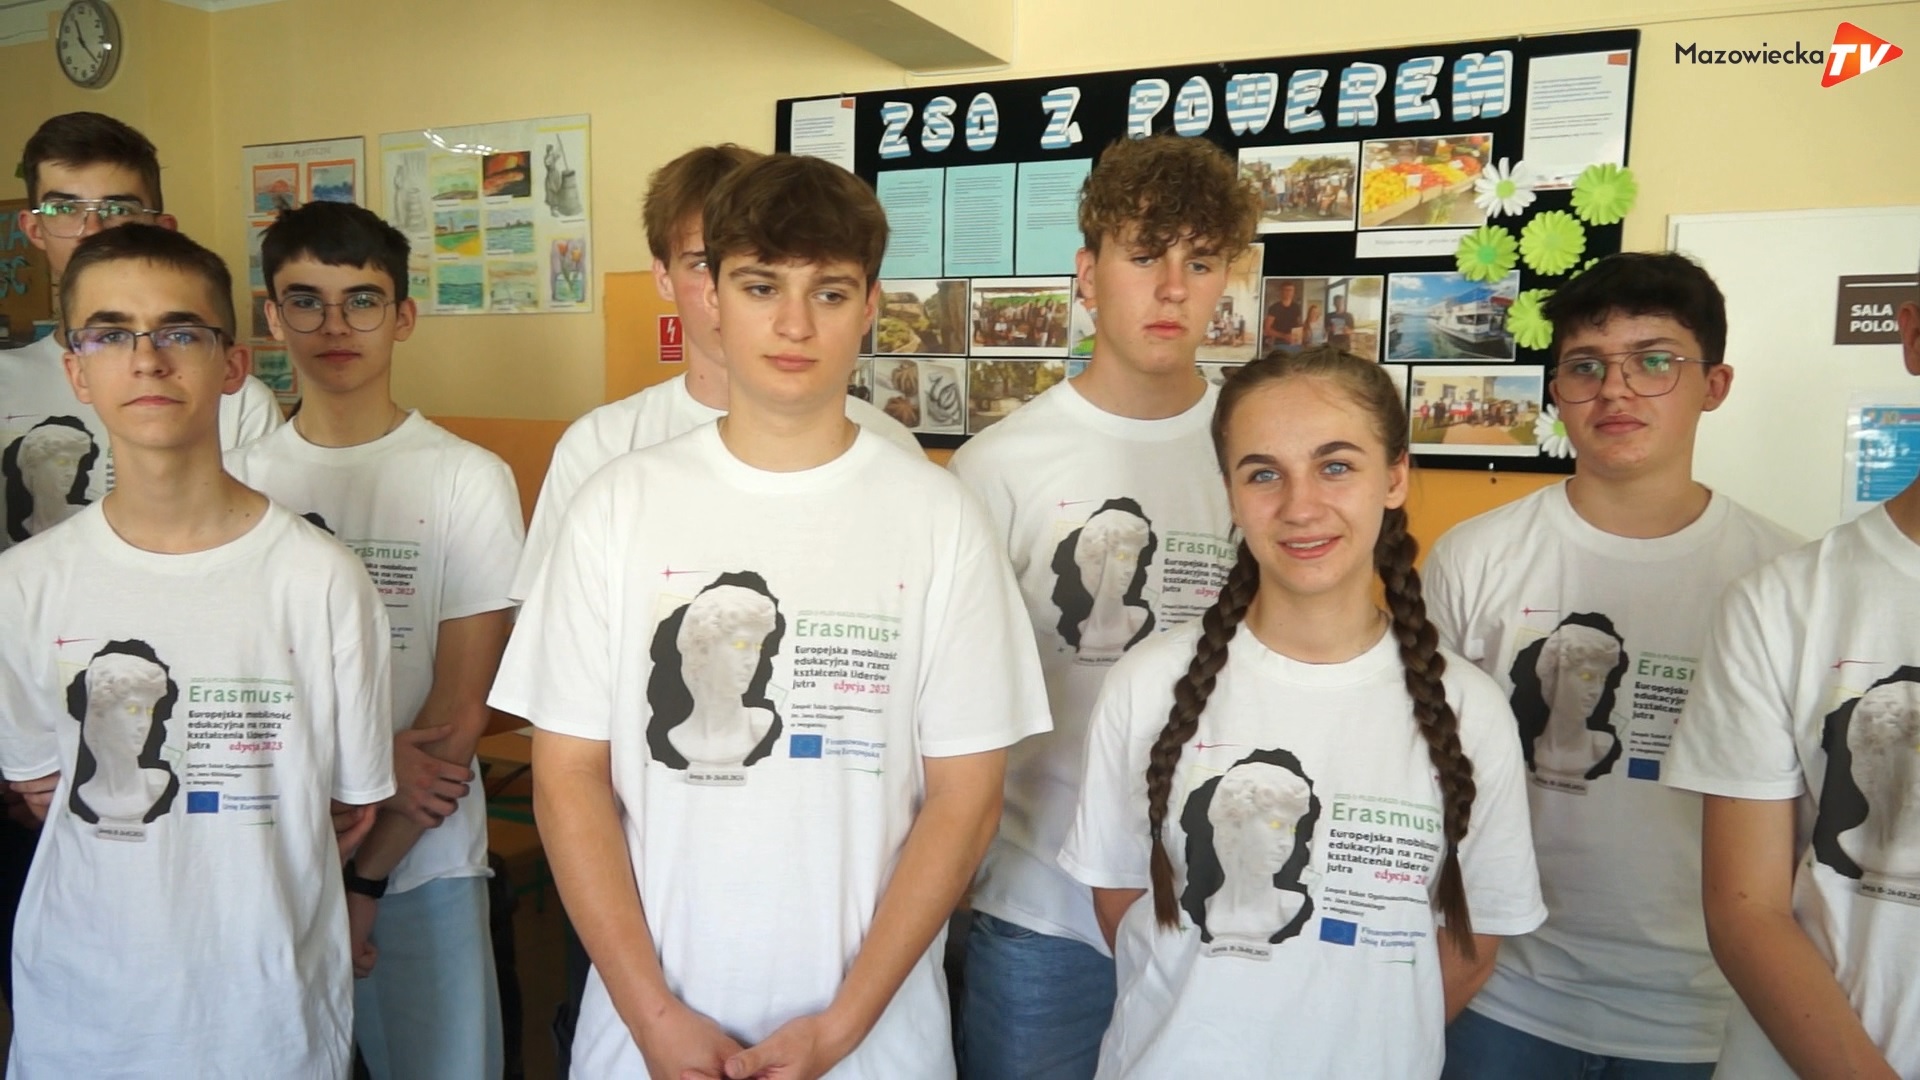 Zagraniczny projekt uczniów ZSO w Mogielnicy zrealizowany z sukcesem